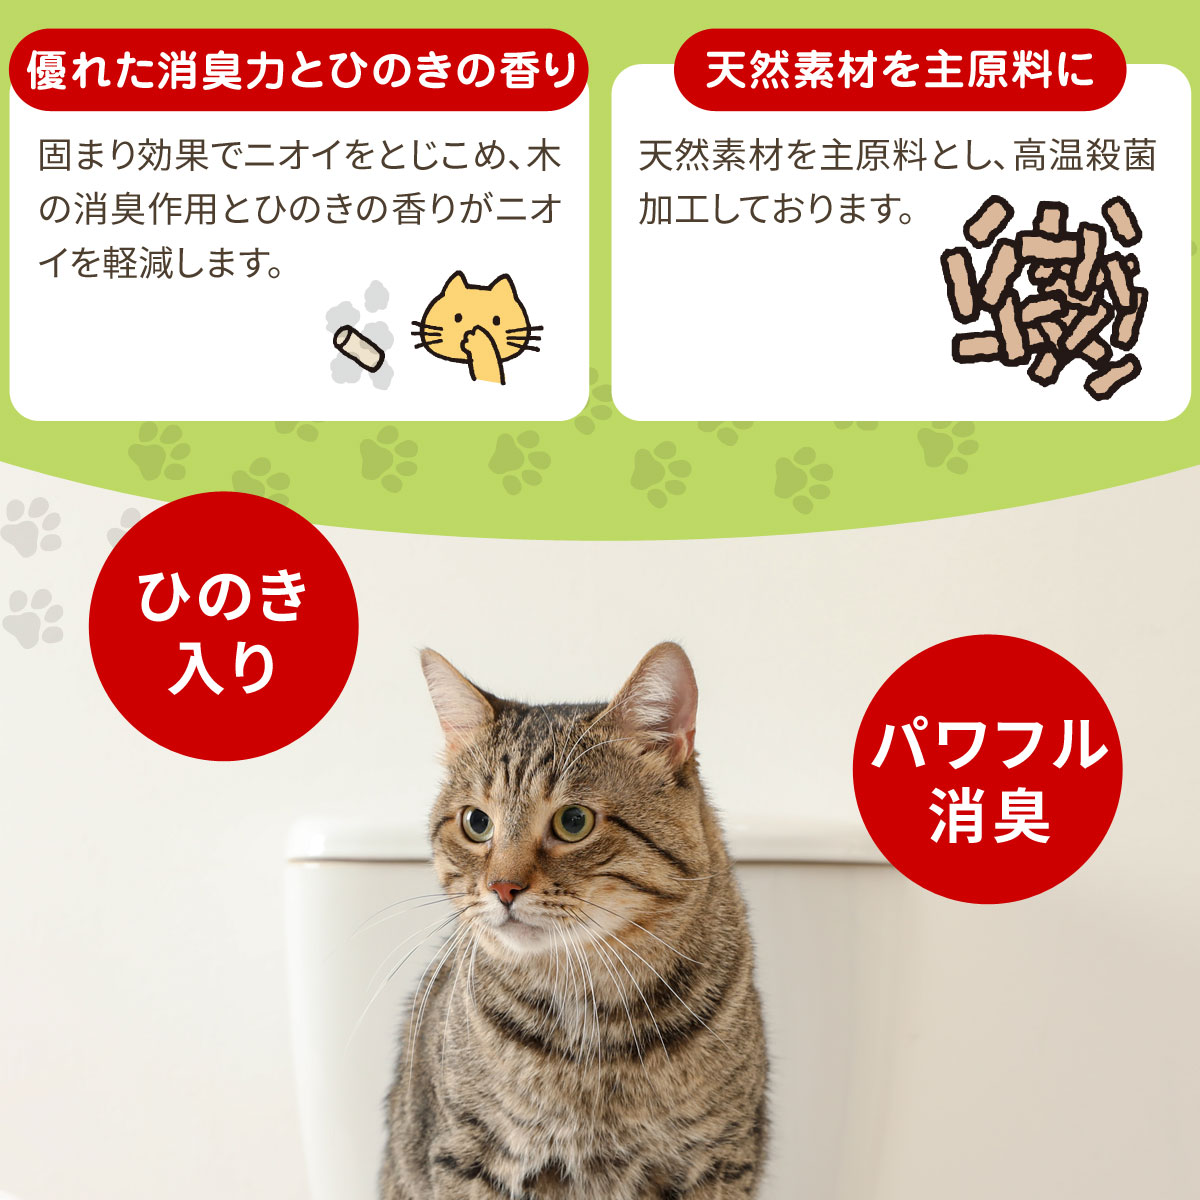 猫砂 常陸化工 トイレに流せる木製猫砂 6L×6袋  配送会社指定不可 選べるプレゼント対象外 他商品同梱不可 ねこ砂 ネコ砂